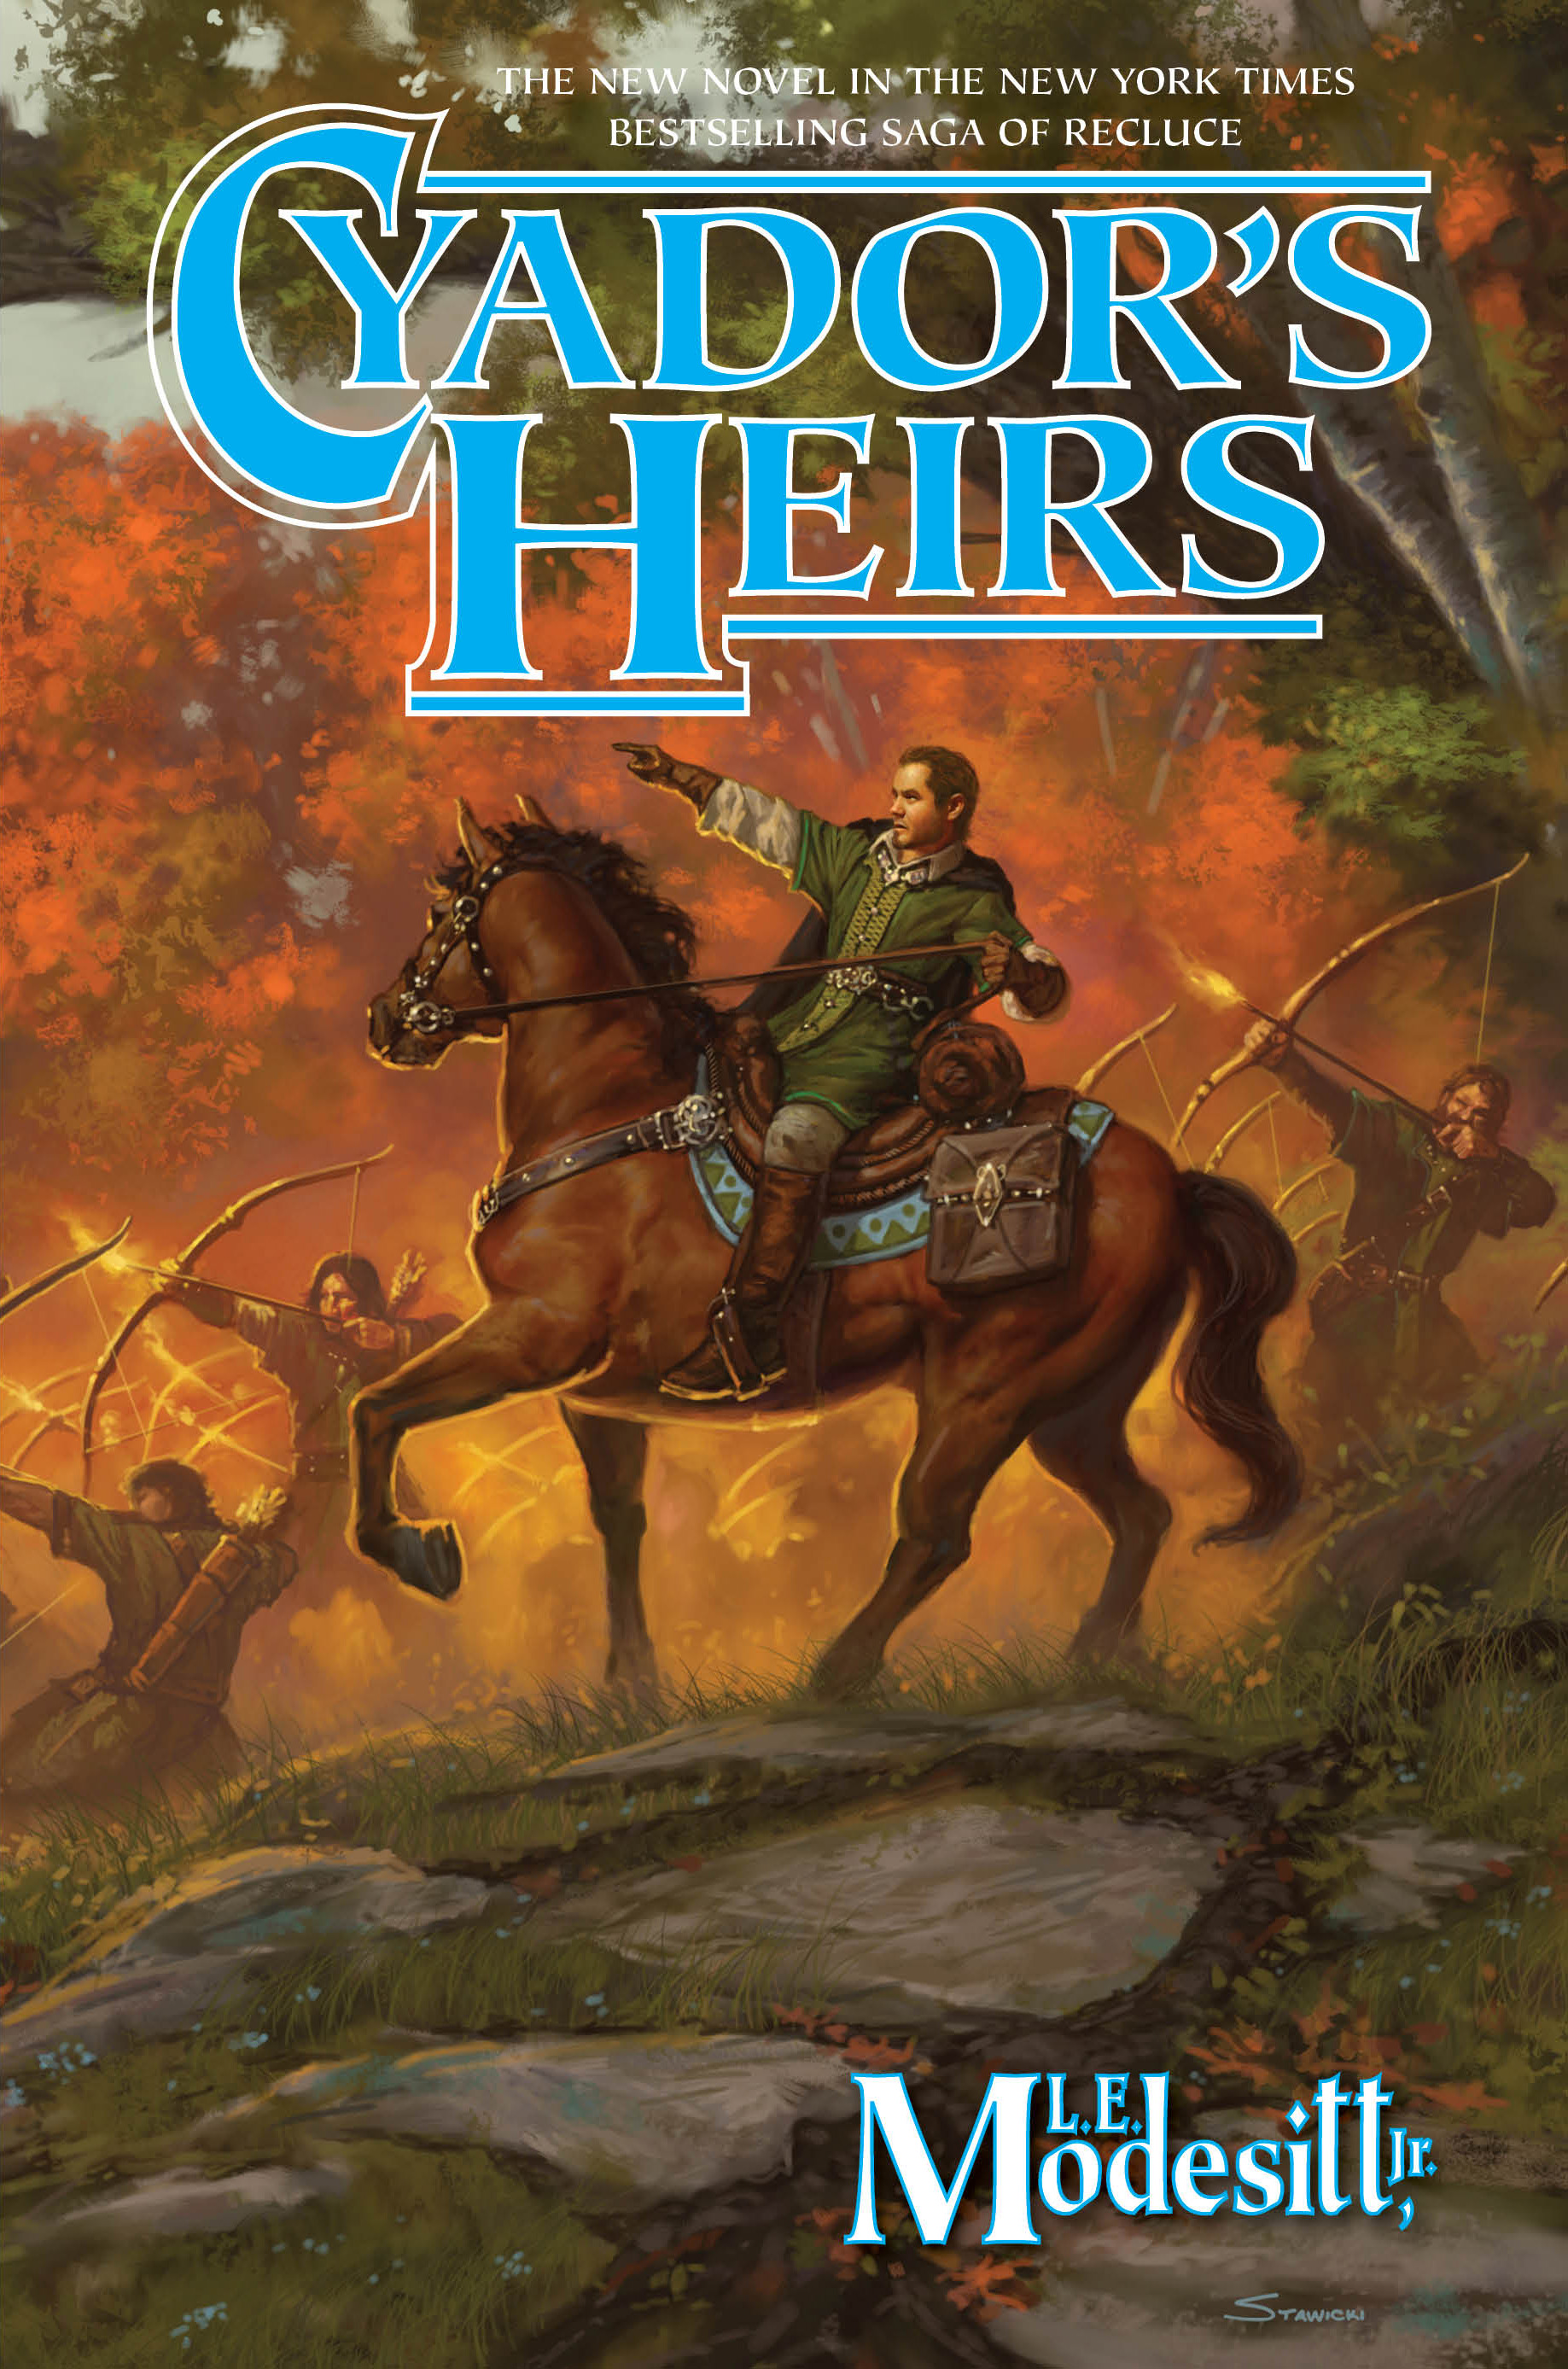 Cyador's Heirs alternate cover art